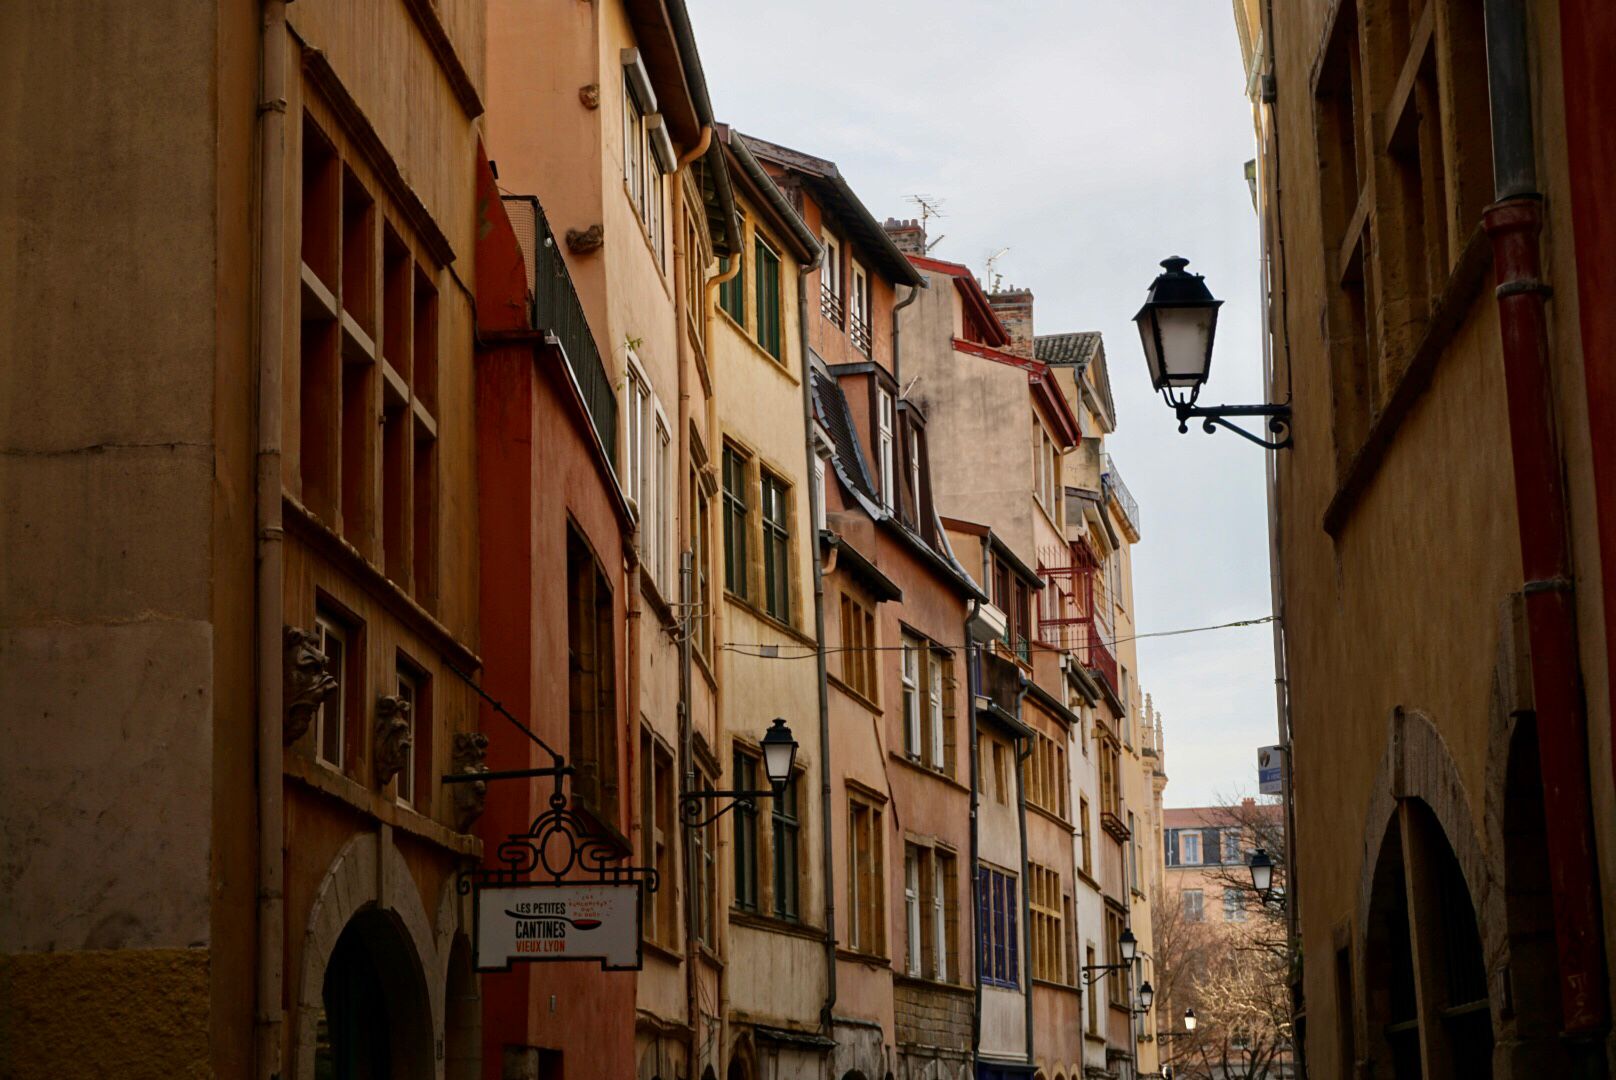 Rue étroite, bordée d'immeubles anciens à plusieurs étages et aux couleurs vives, avec des pavés et un lampadaire classique.